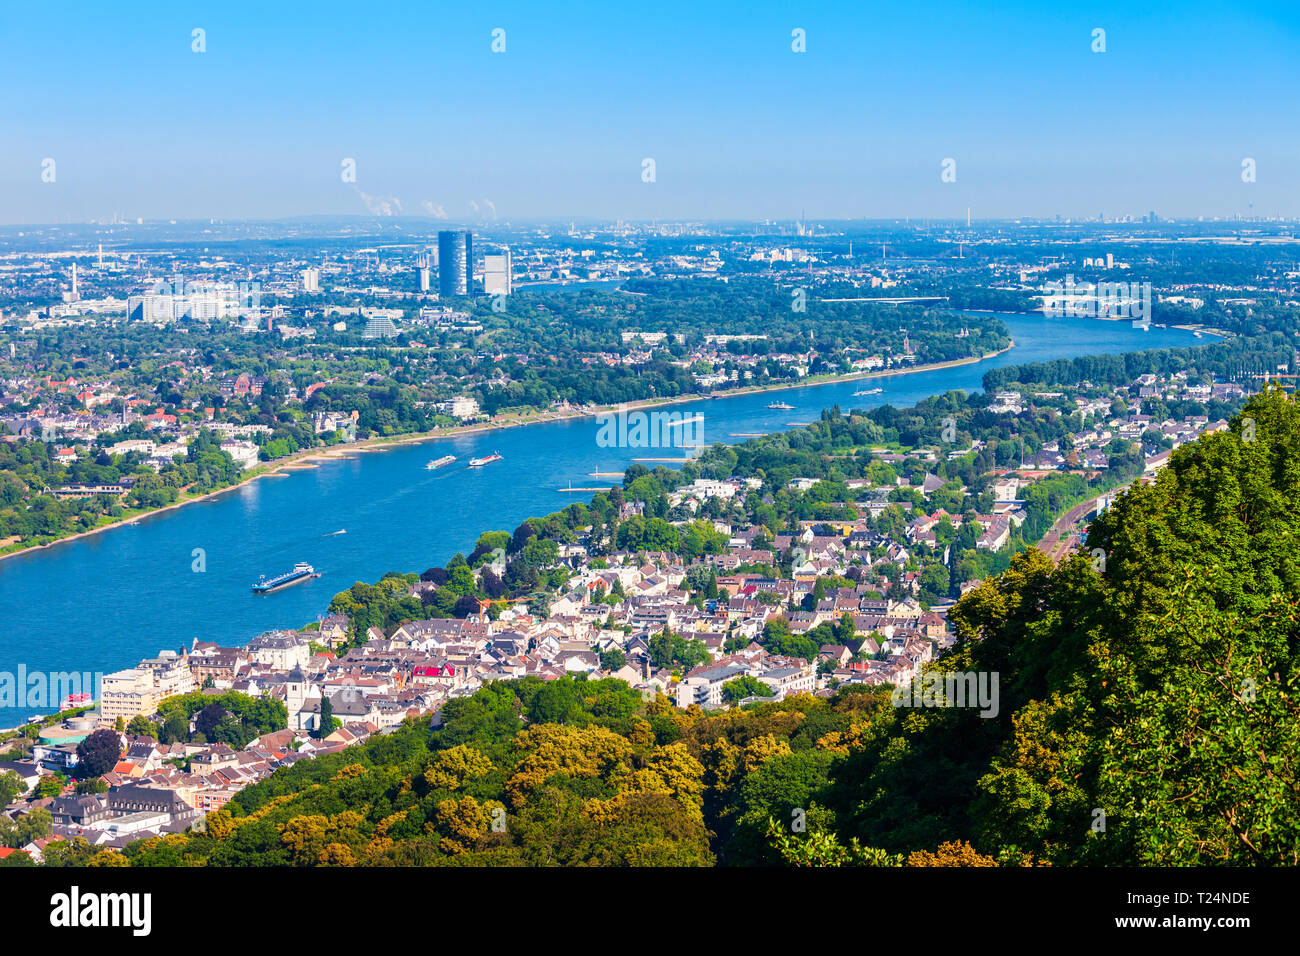 Banlieue de la ville de Bonn en Allemagne vue panoramique aérienne Banque D'Images